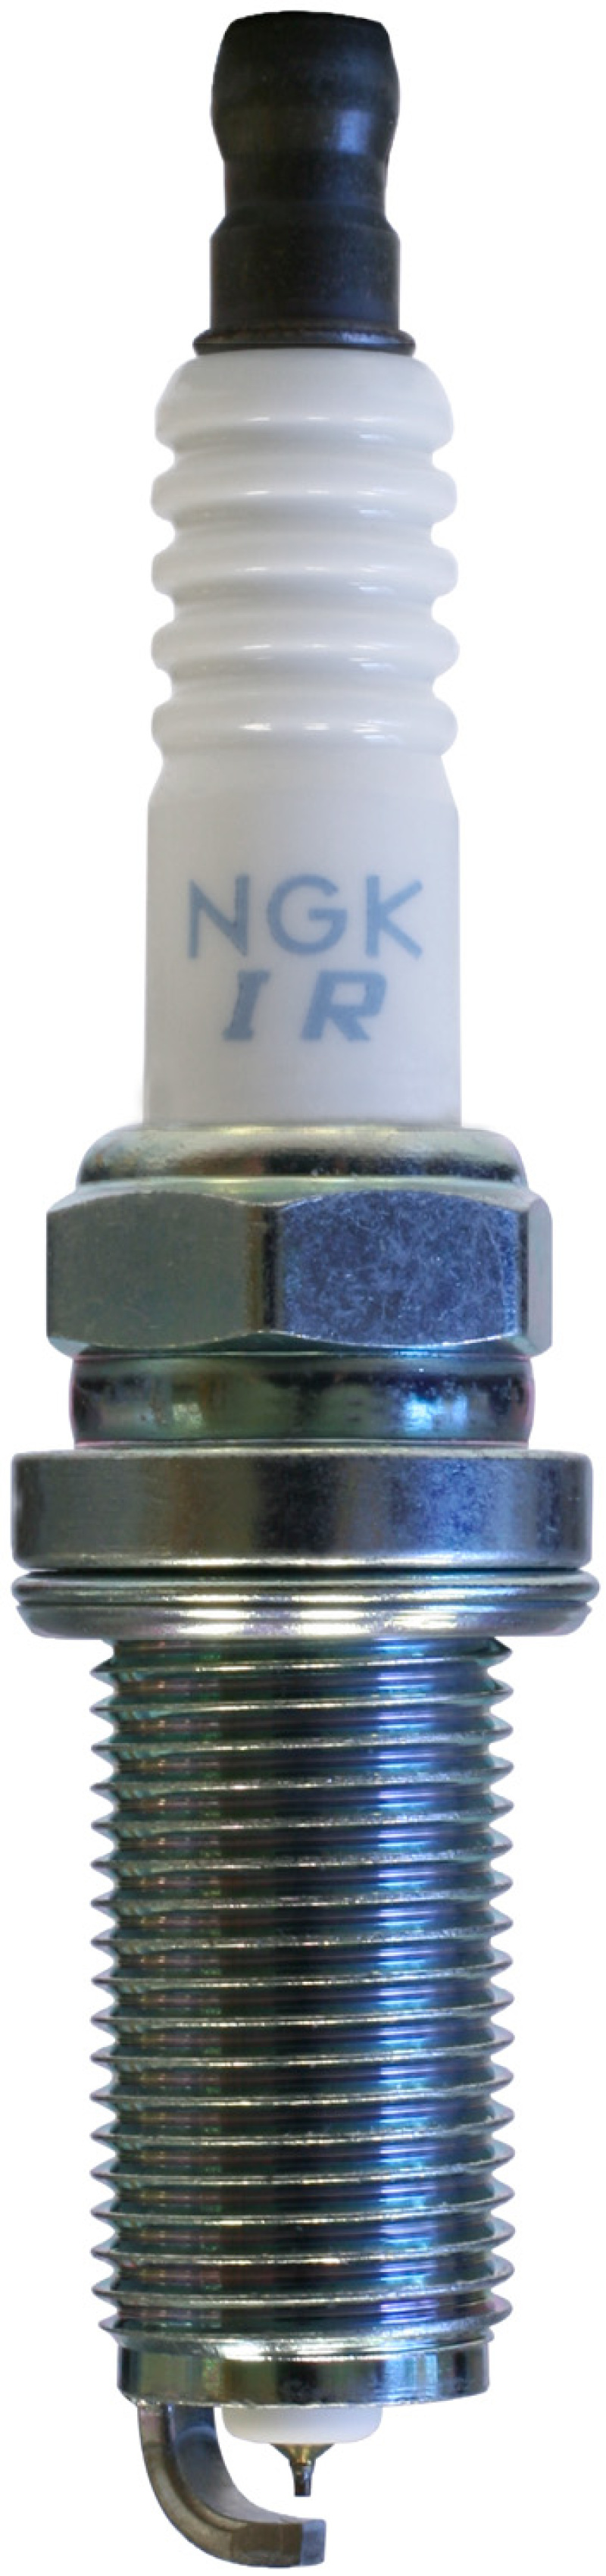 NGK Laser Iridium Spark Plug Box of 4 (SILFR6A11) - 5468